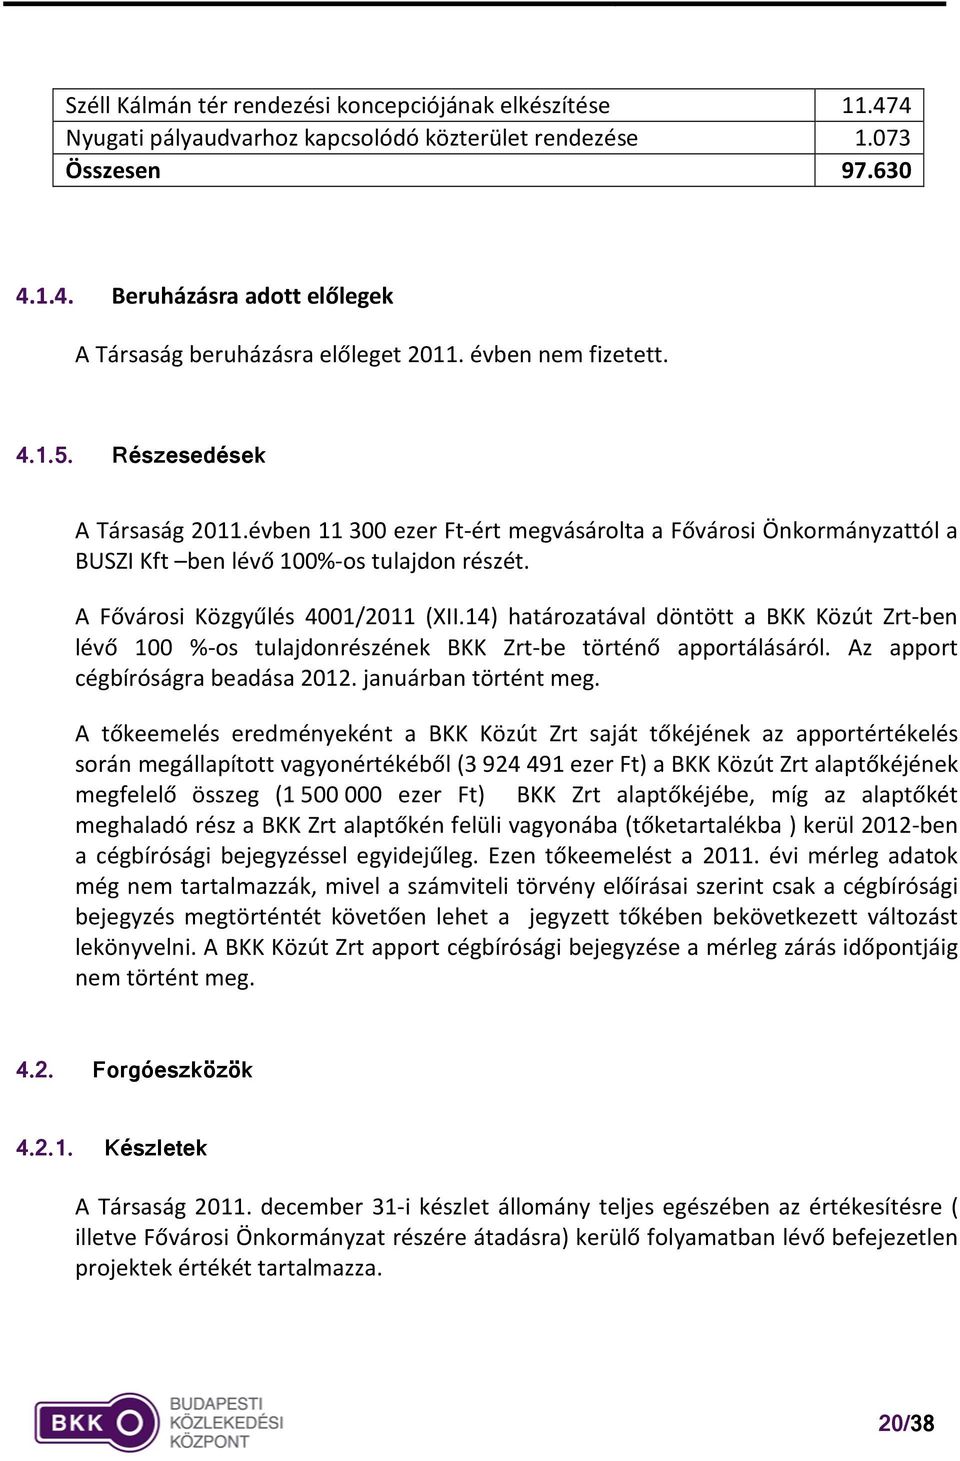 A Fővárosi Közgyűlés 4001/2011 (XII.14) határozatával döntött a BKK Közút Zrt-ben lévő 100 %-os tulajdonrészének BKK Zrt-be történő apportálásáról. Az apport cégbíróságra beadása 2012.